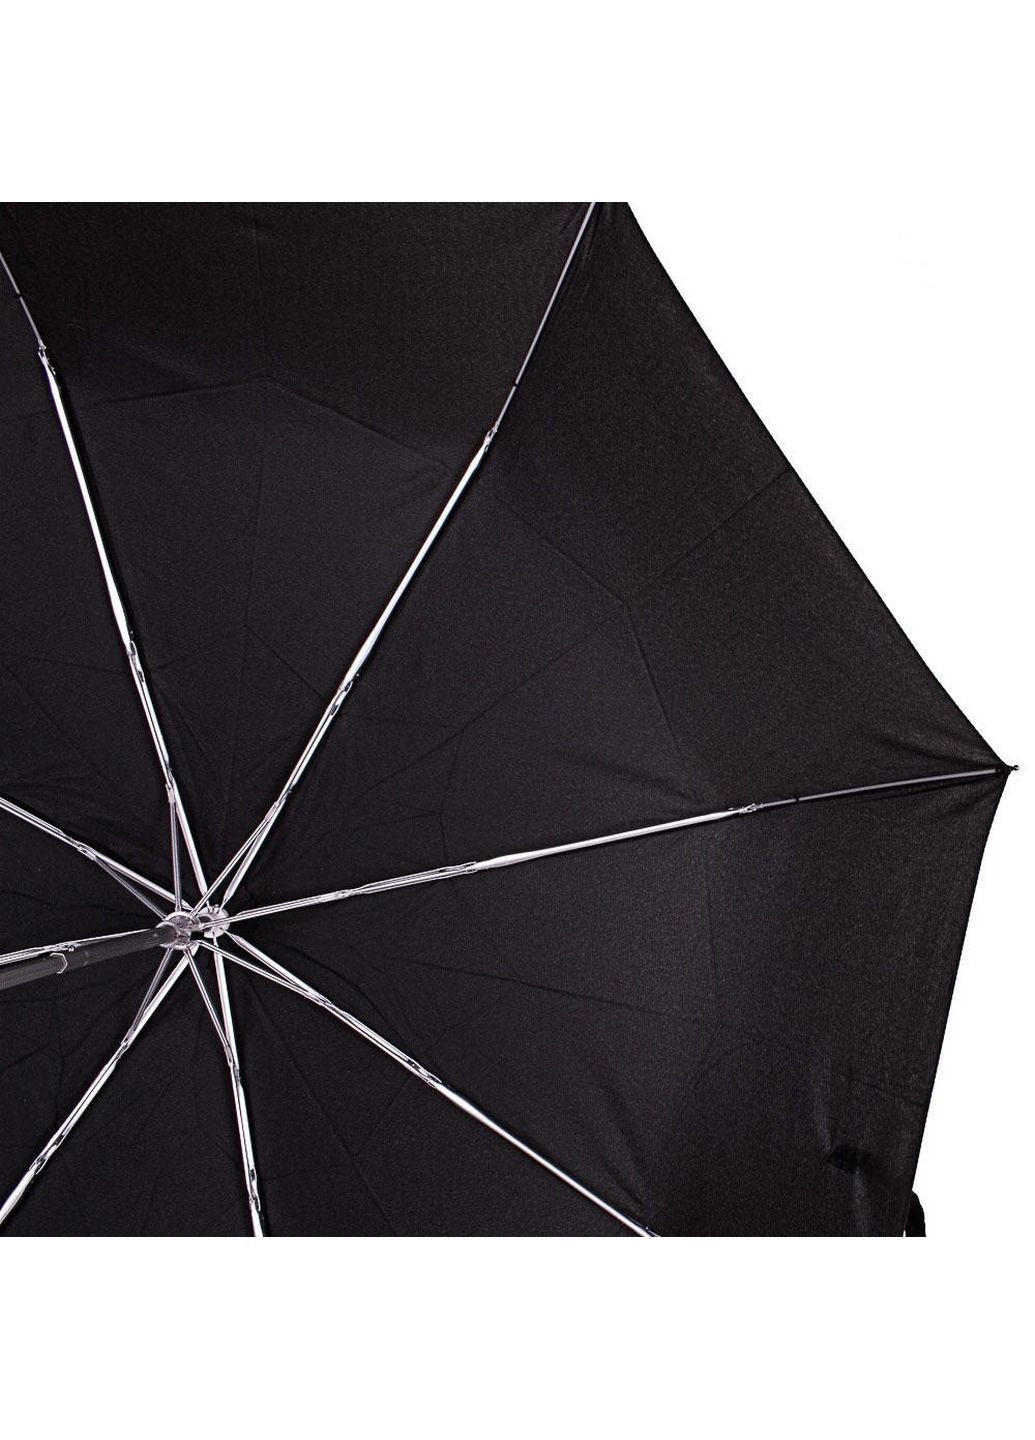 Мужской складной зонт механический Happy Rain (282592762)